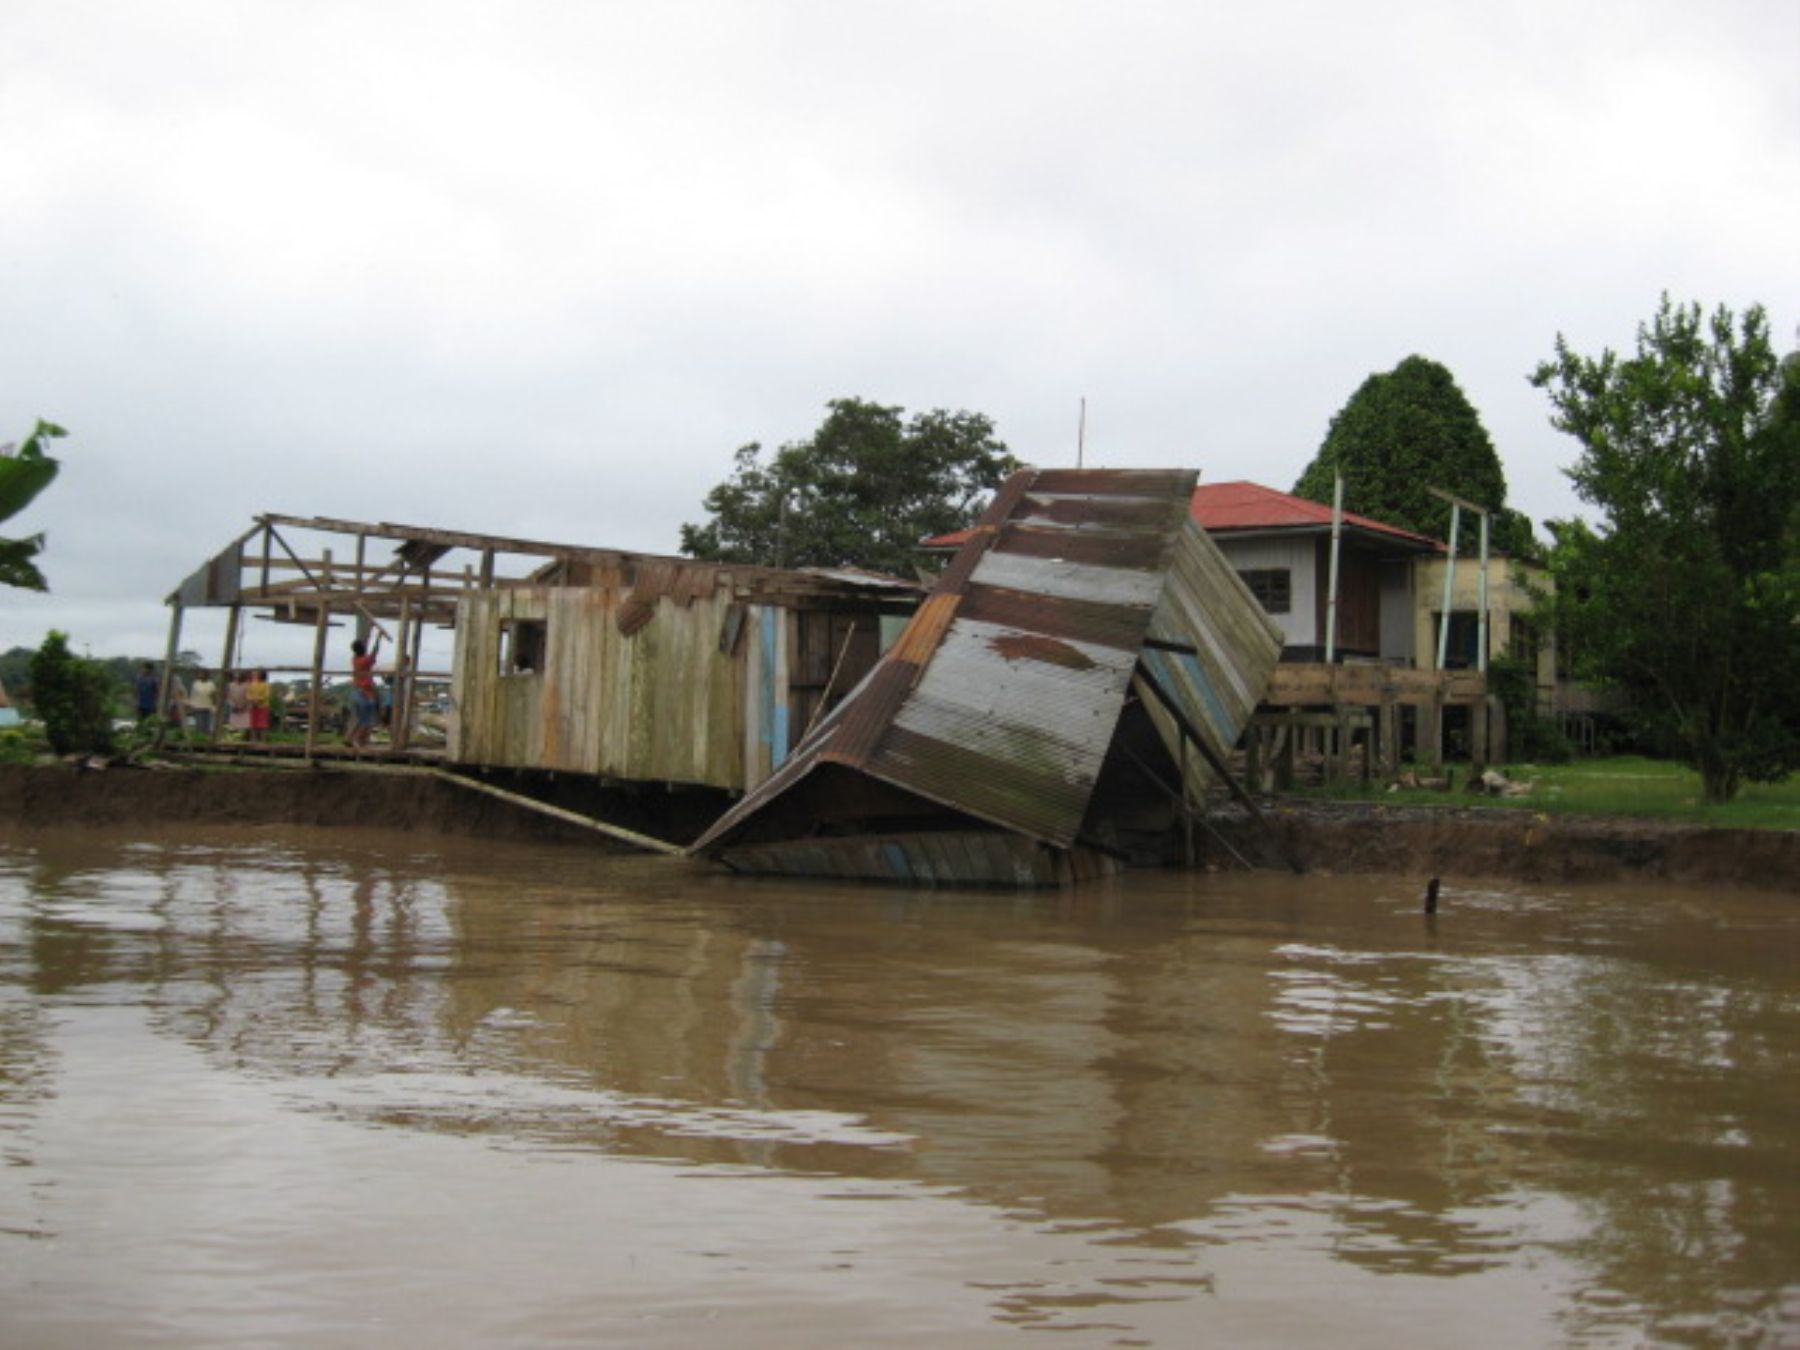 Las inundaciones en el río Amazonas incrementaron en frecuencia y gravedad durante las últimas tres décadas, siendo una de las causas el calentamiento global, según un estudio de científicos chilenos y británicos.ANDINA/Difusión